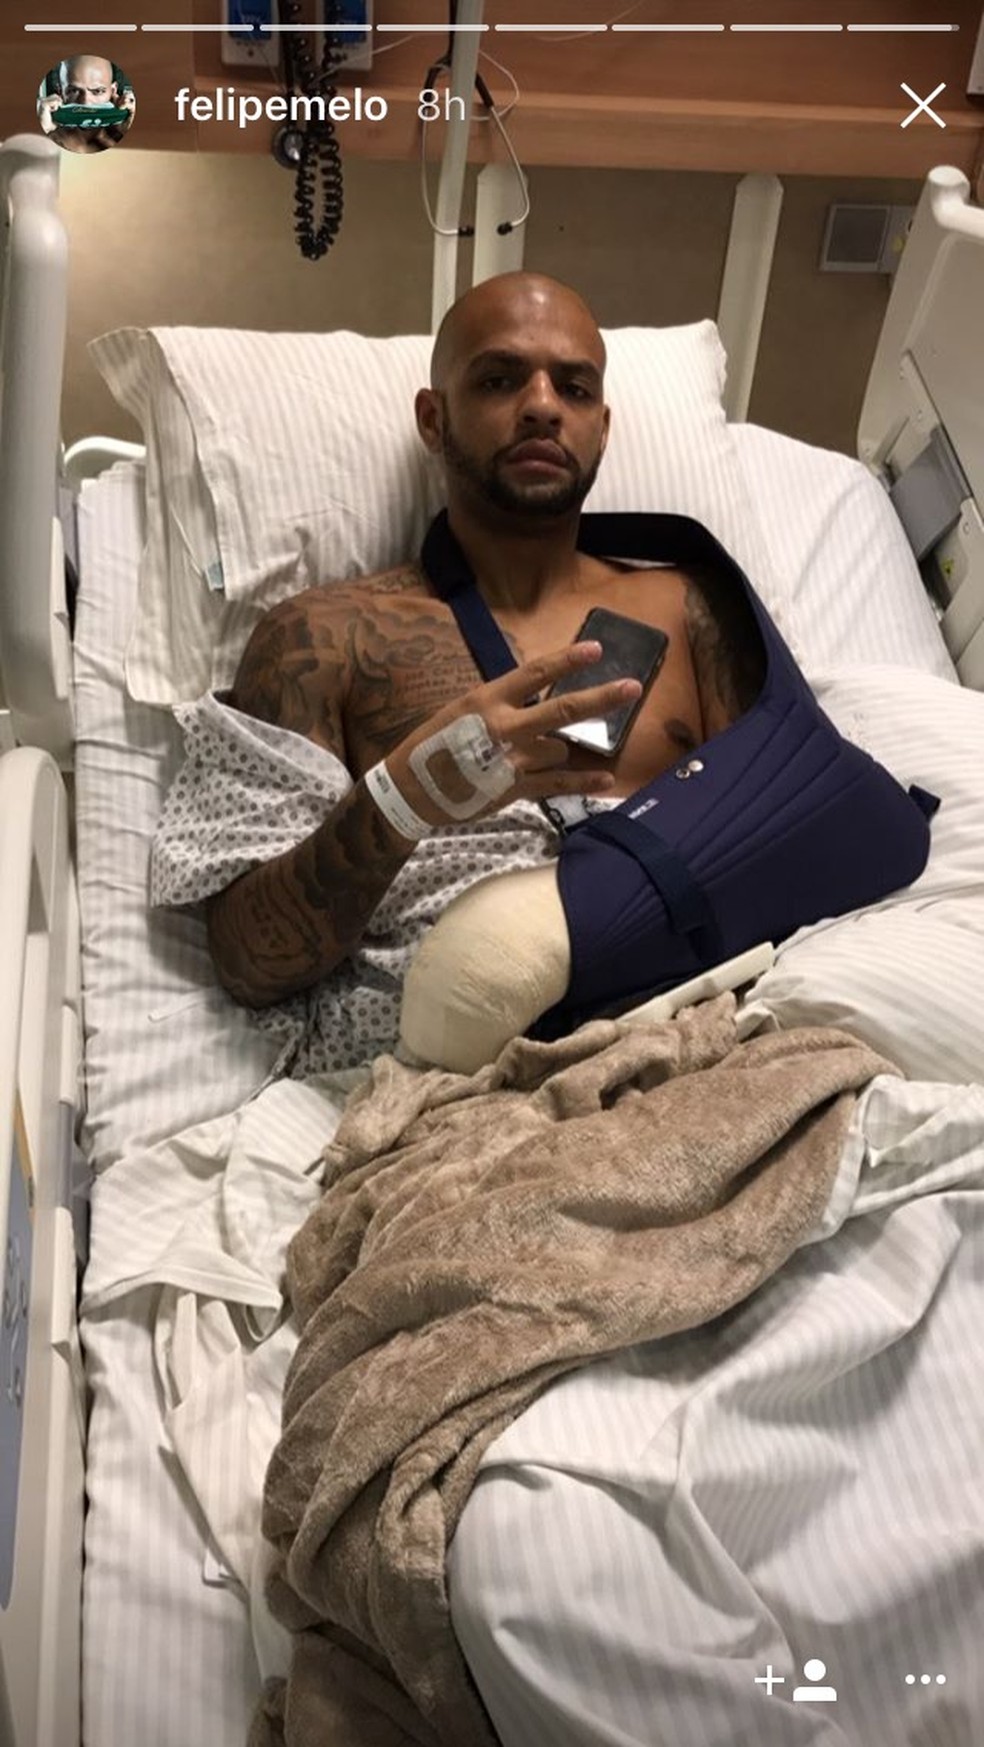 Felipe Melo posa após cirurgia (Foto: Reprodução/Instagram)